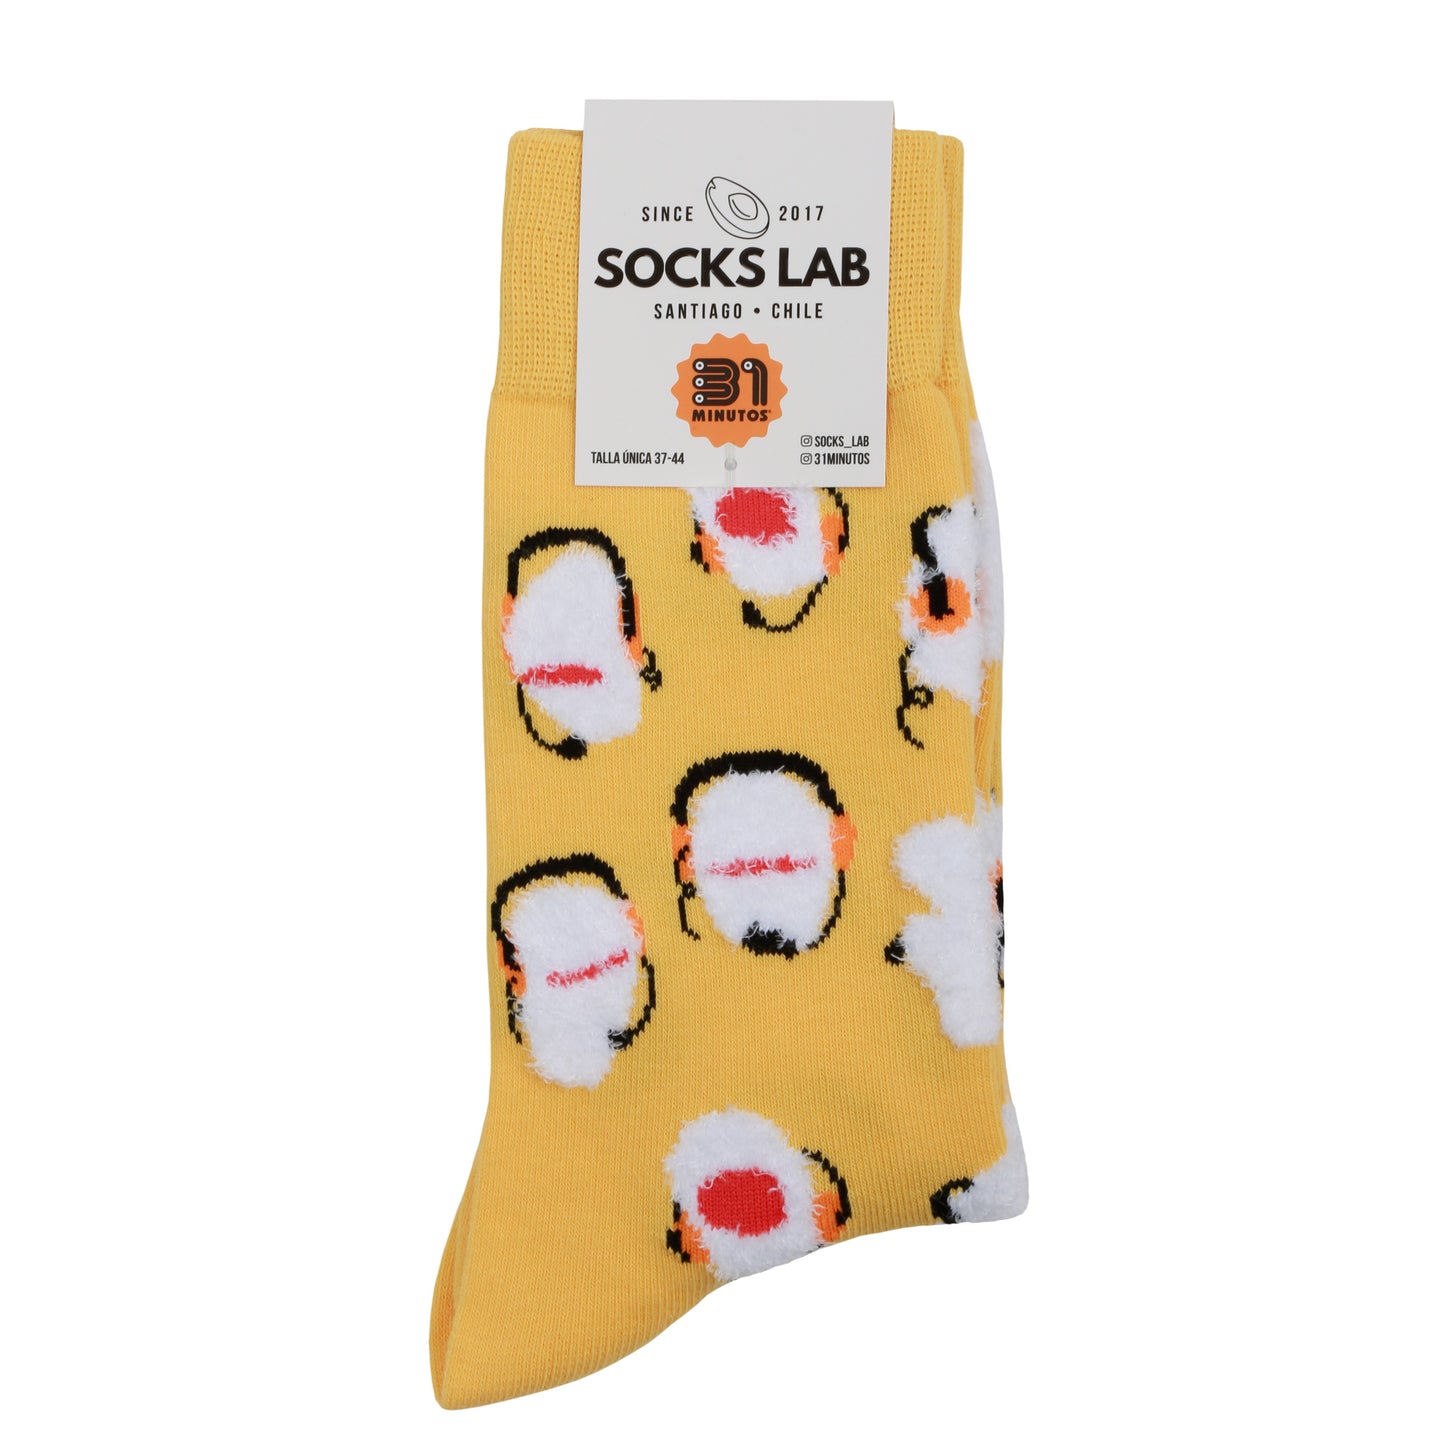 Calcetines con diseño Socks Lab - Juanin peludito - 31 minutos